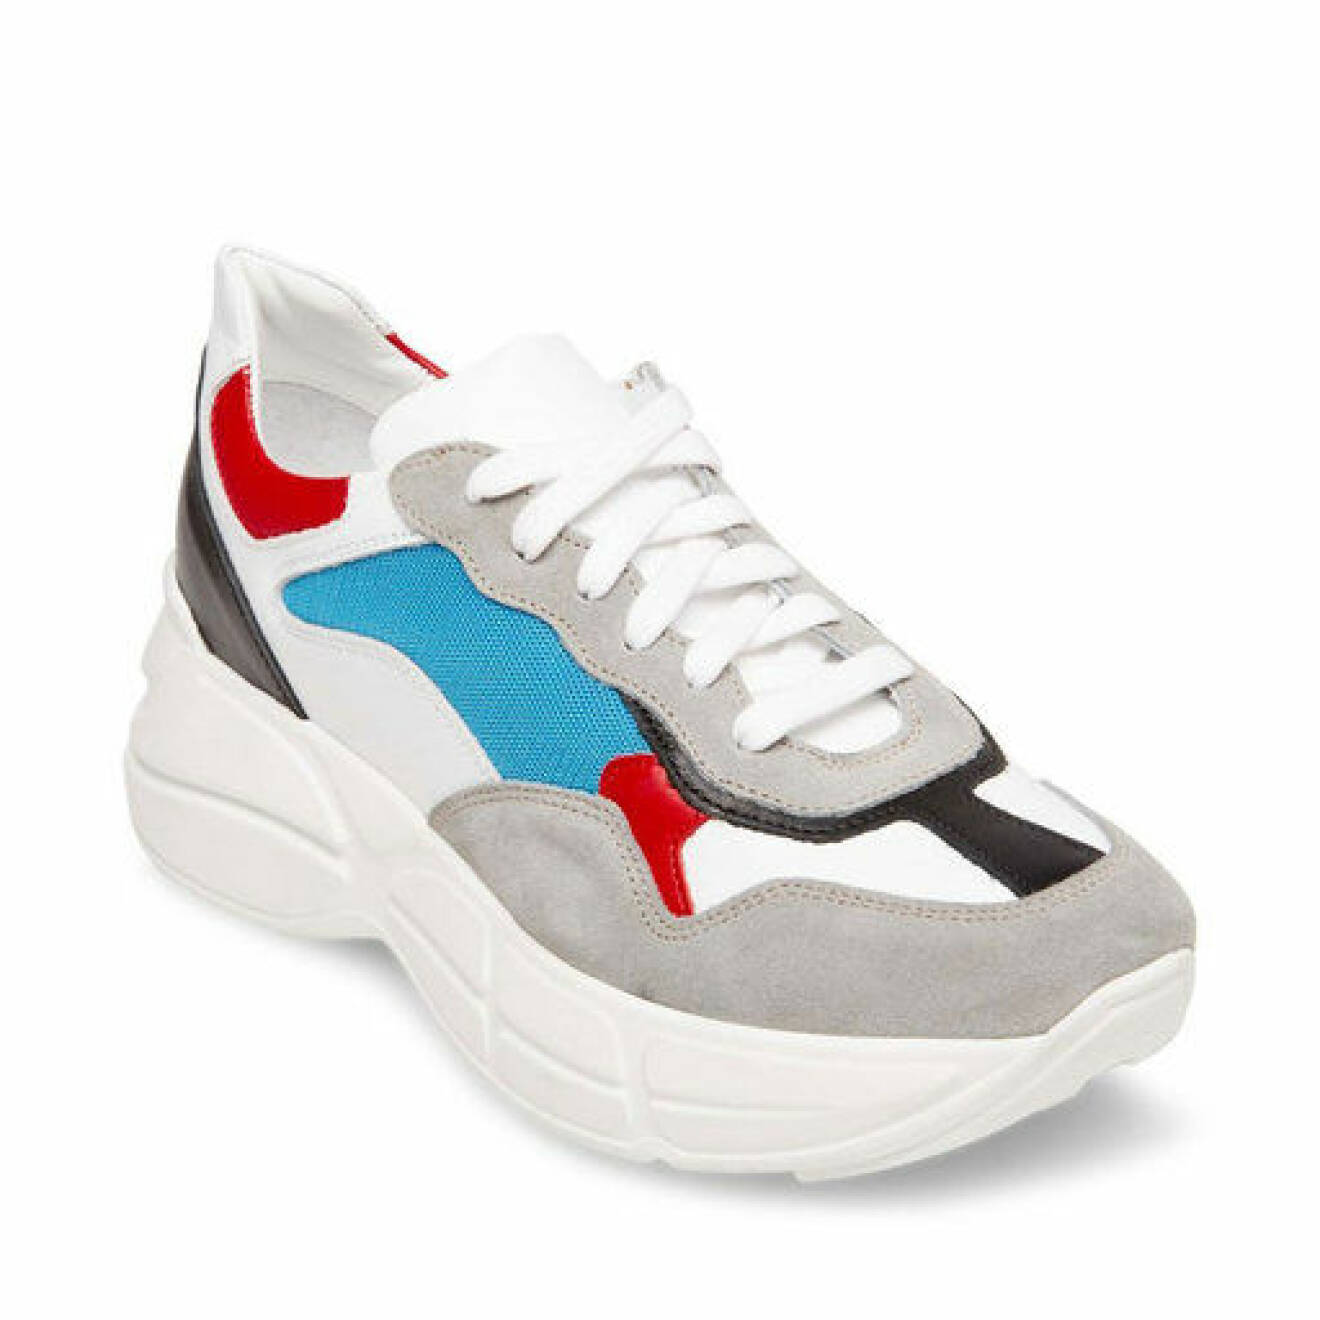 Gråa sneakers med detaljer i svart, blått och rött från Steve Madden.